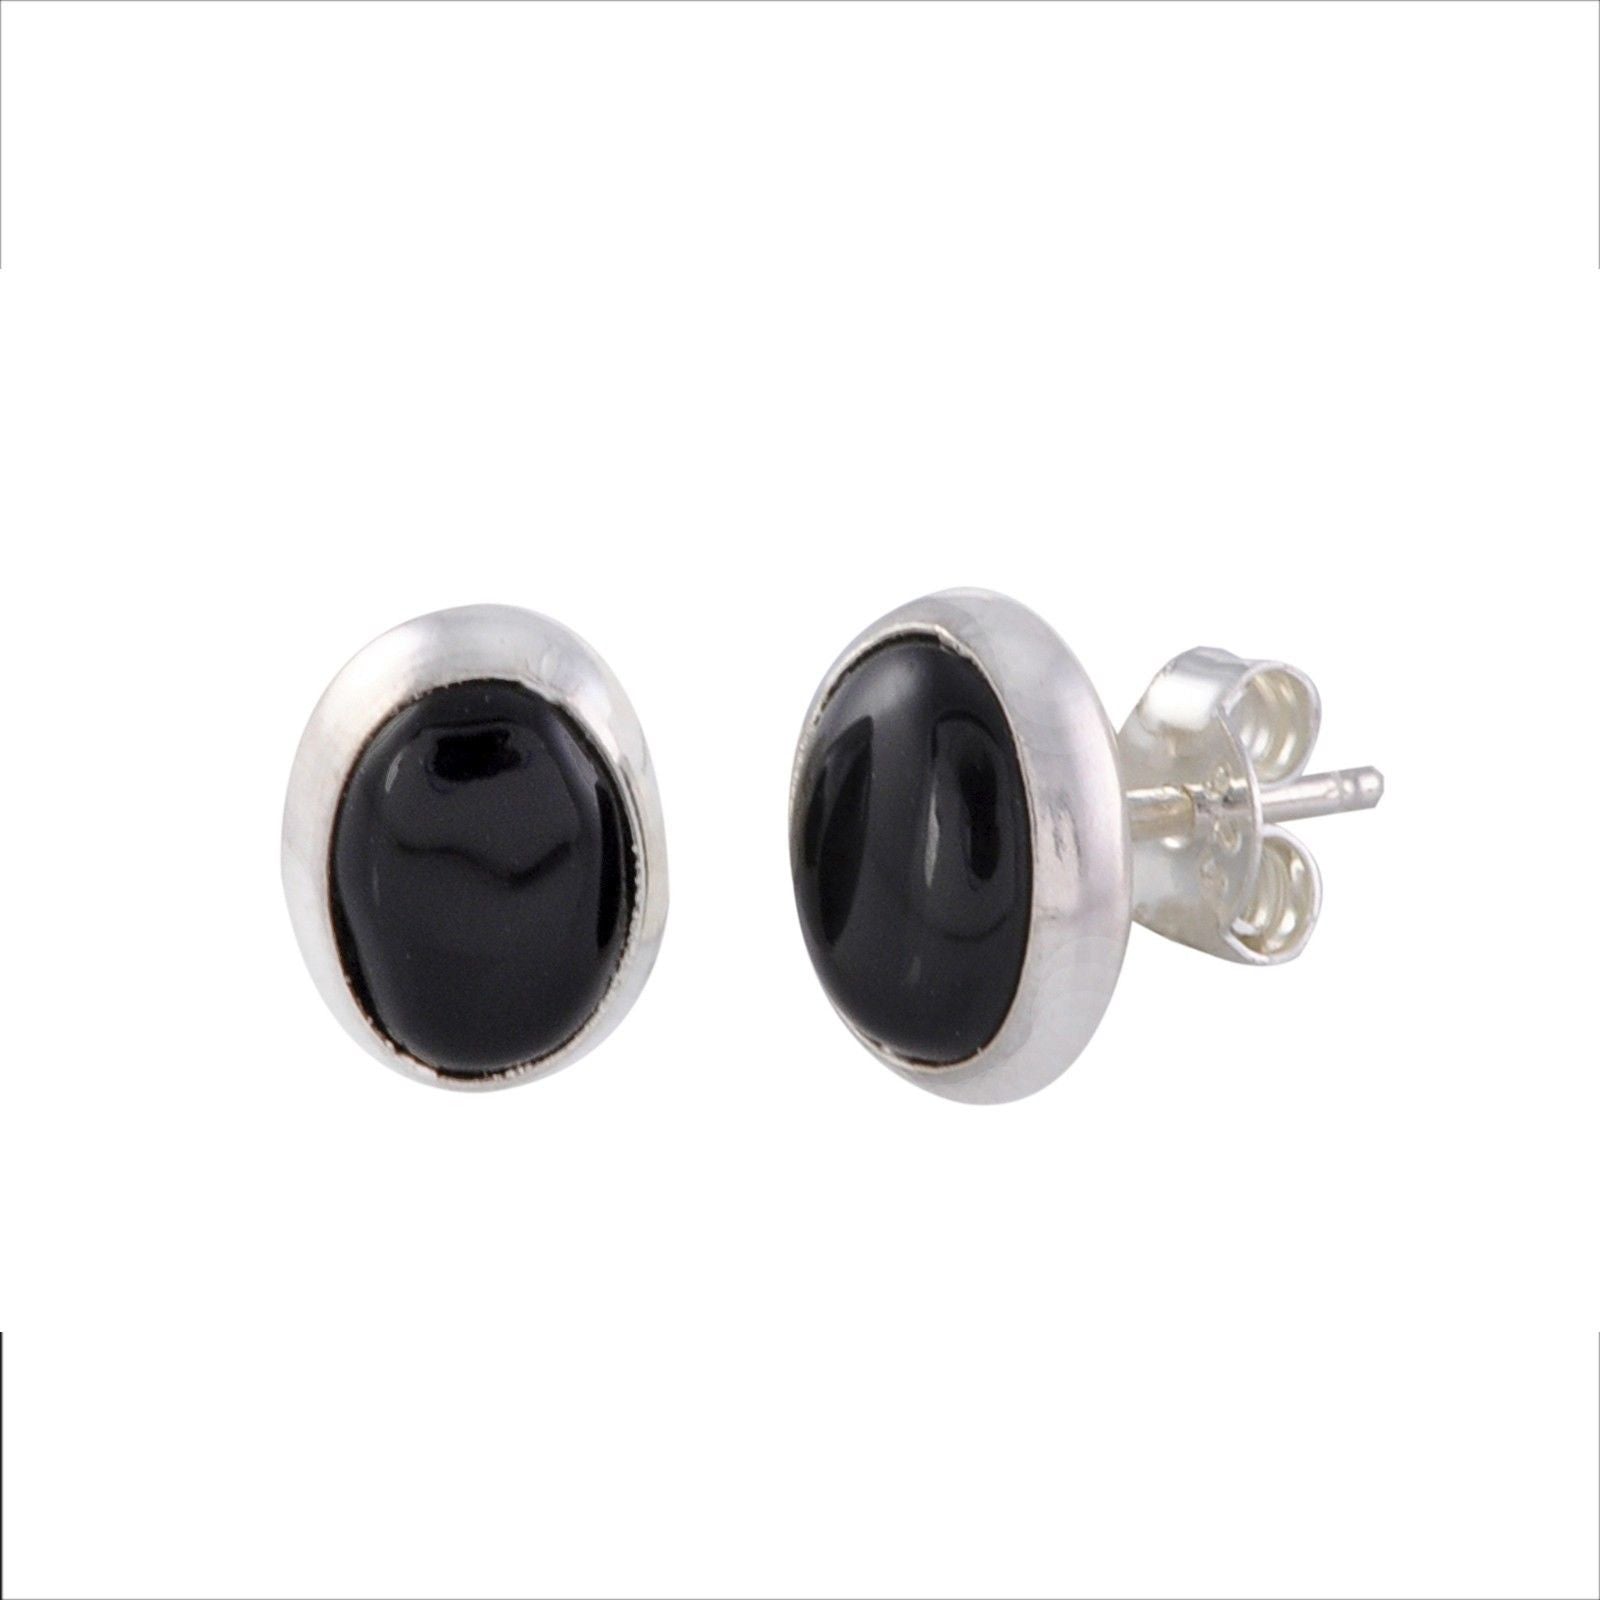 Black Onyx Stud Earrings .925 Sterling Silver Gemstone 7mm x 9mm Oval ...